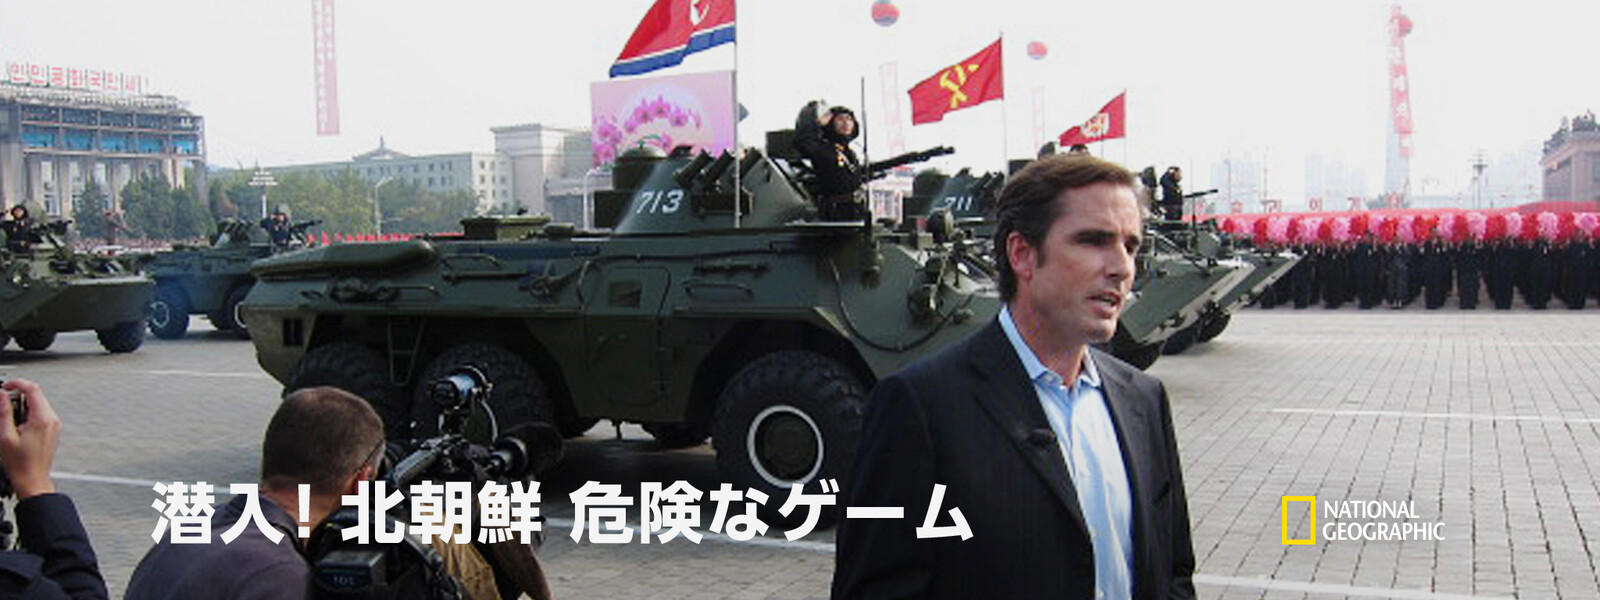 潜入! 北朝鮮：危険なゲーム 動画